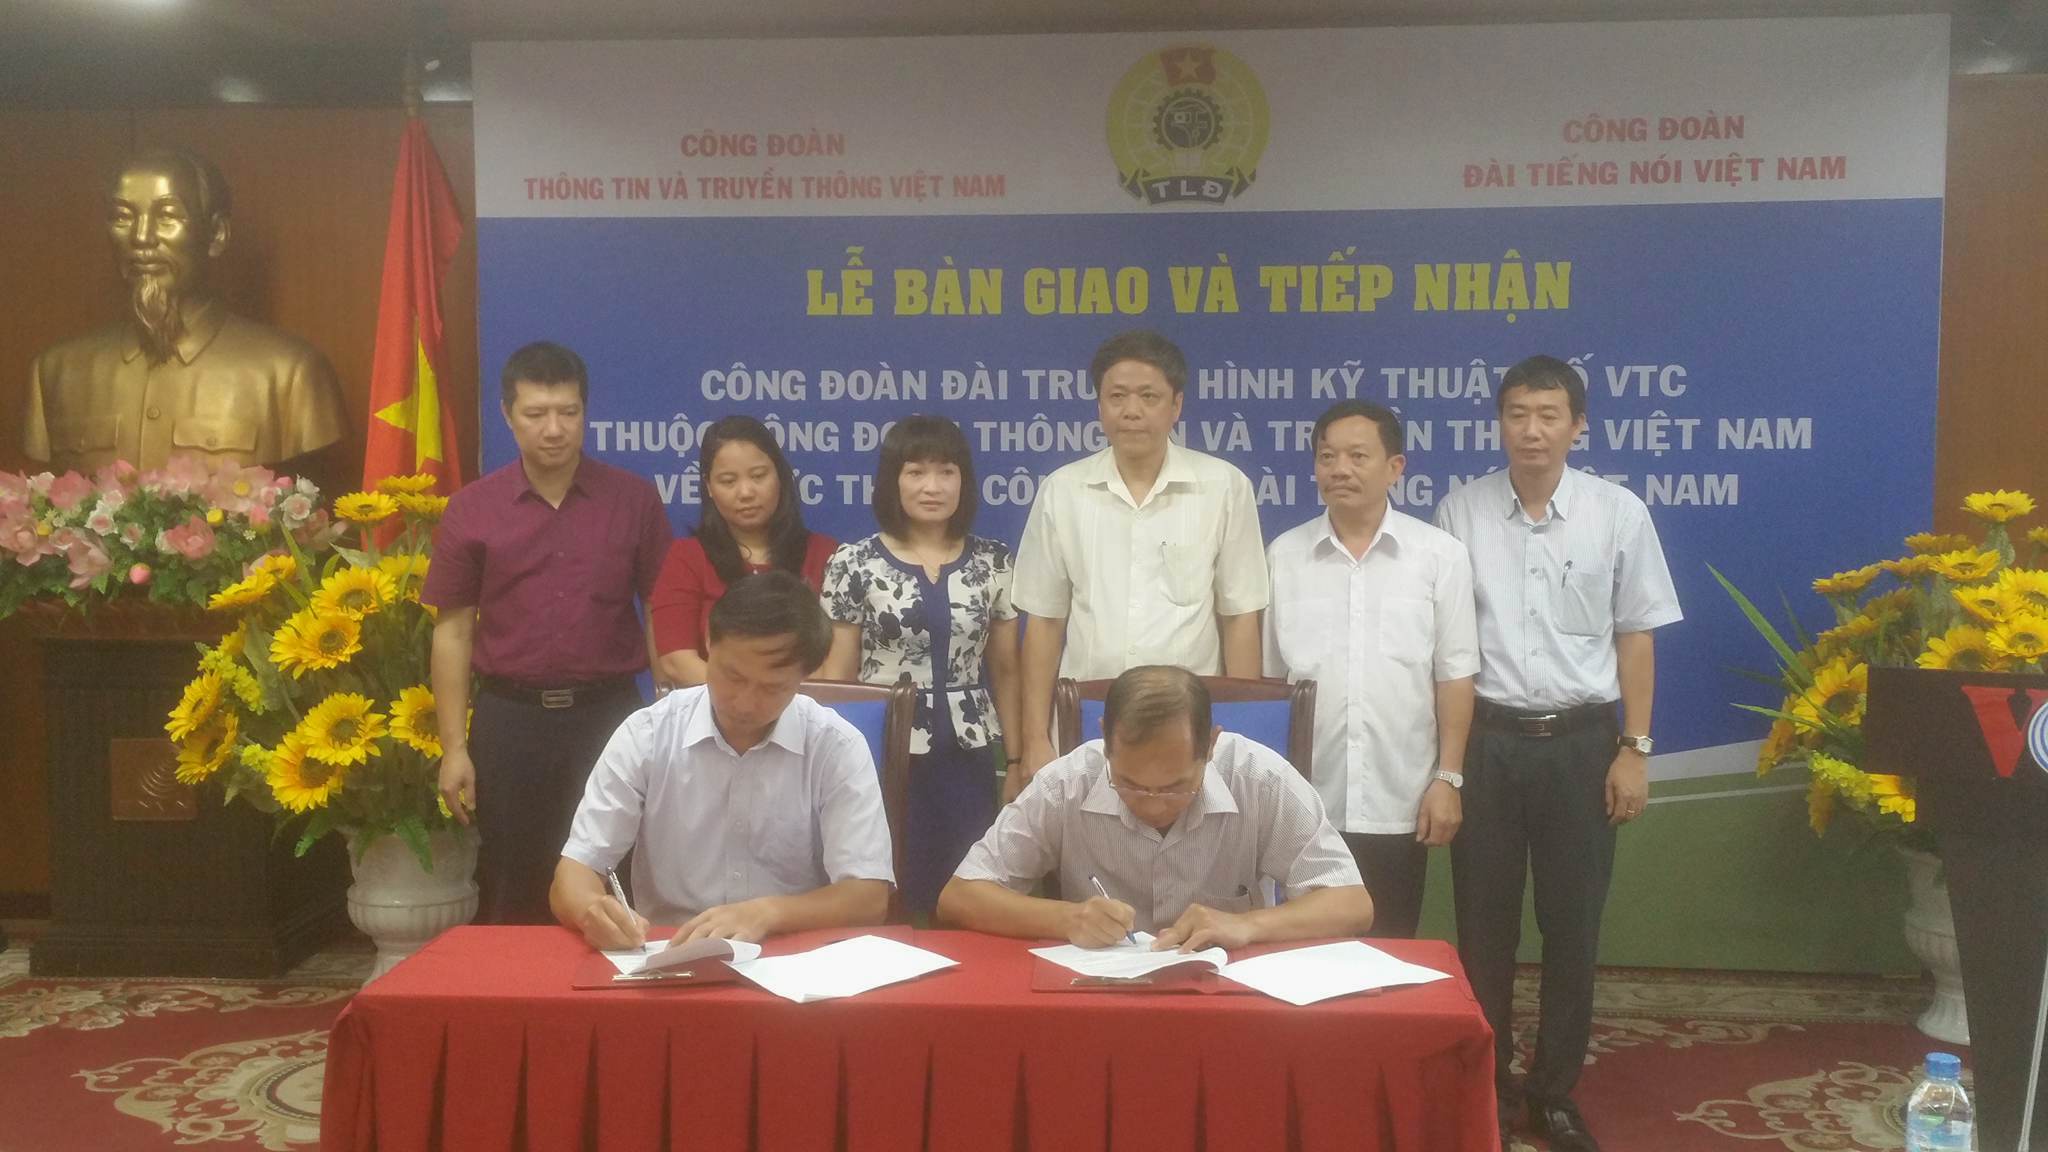 Công đoàn Đài Tiếng nói Việt Nam tiếp nhận 01 CĐCS